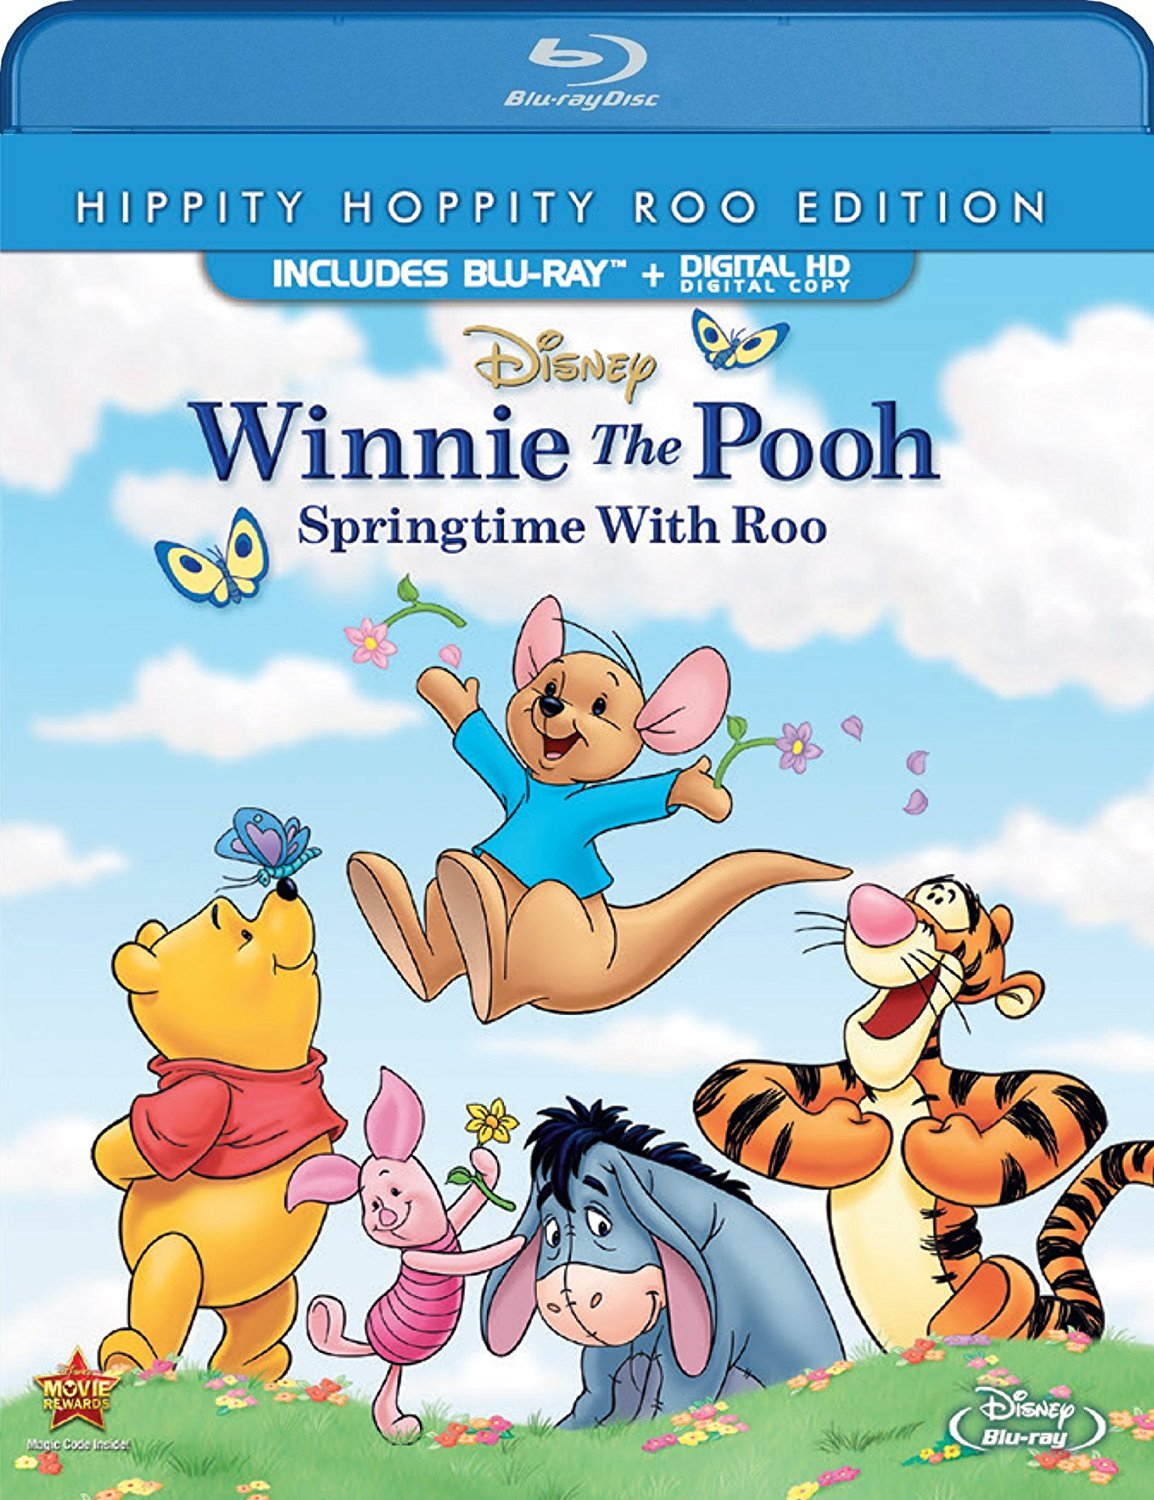 Winnie the Pooh subtitles 77 subtitles